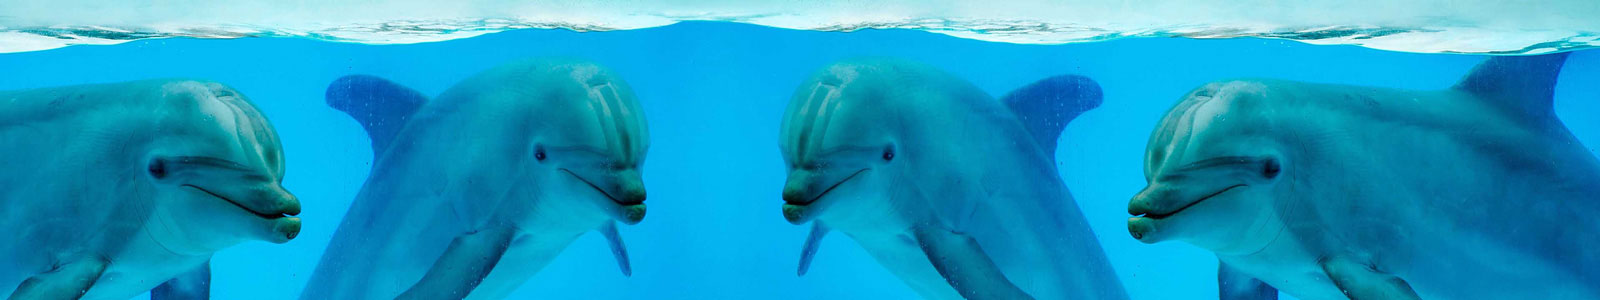 №4348 - Улыбающиеся дельфины